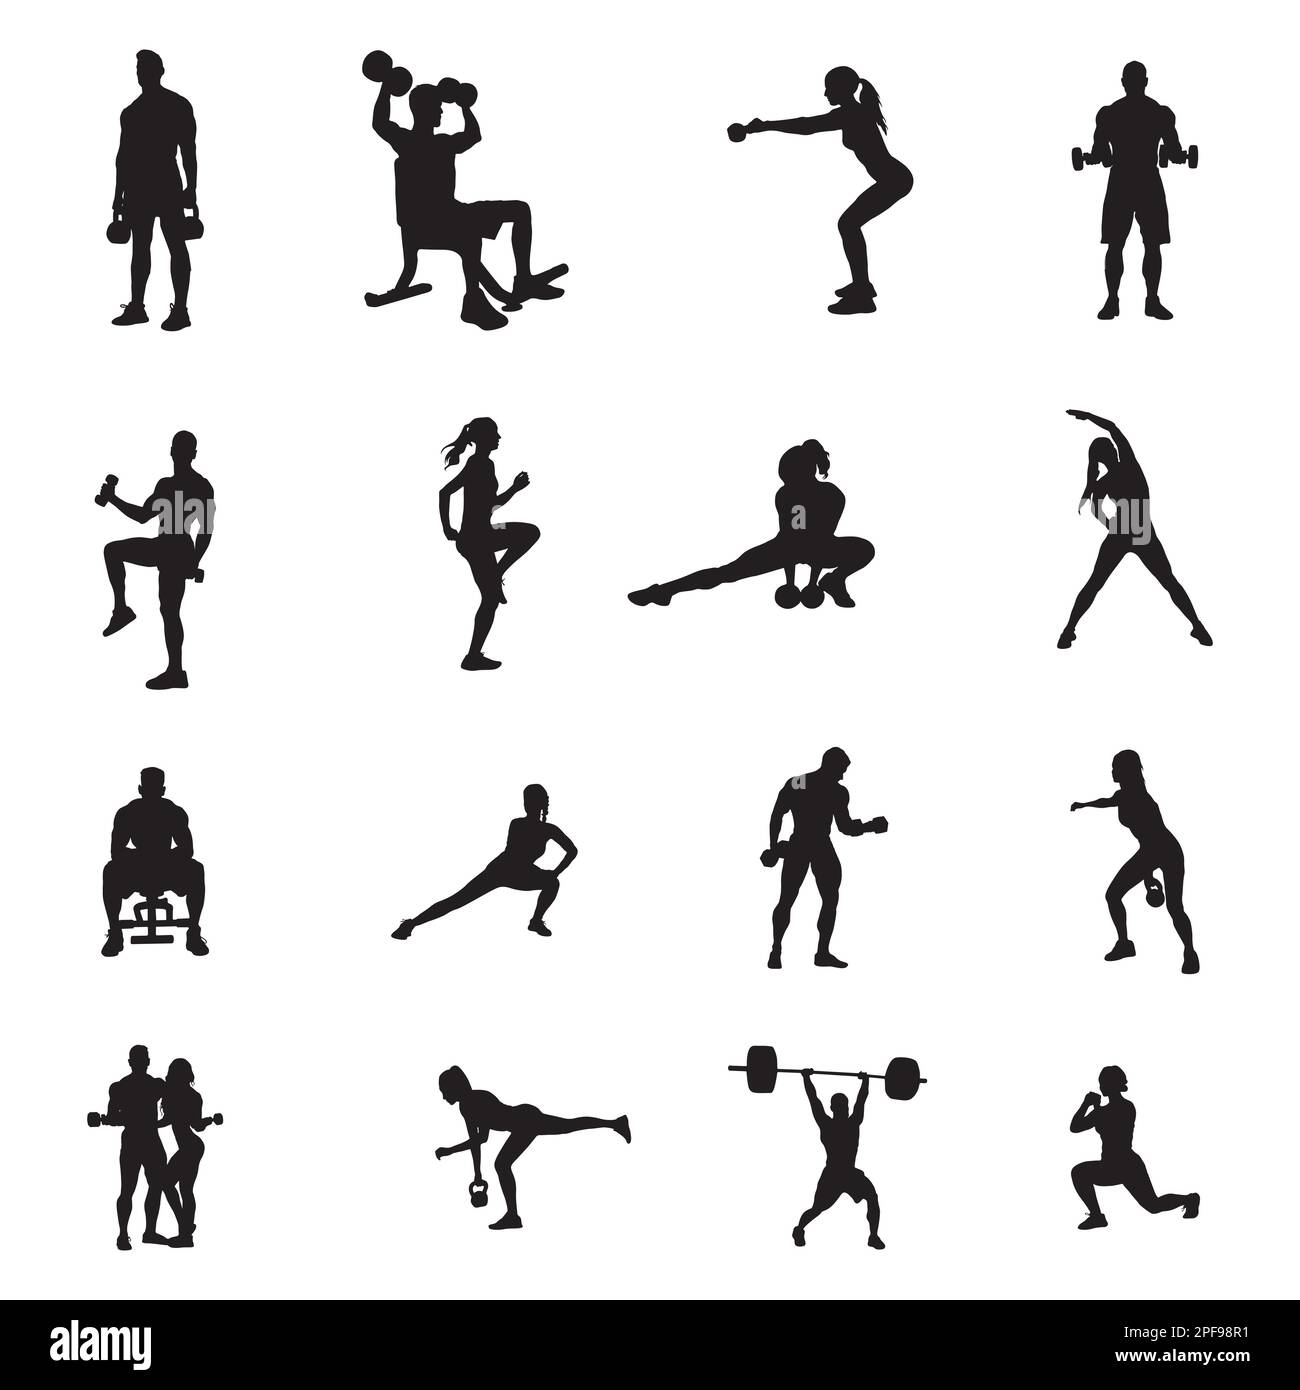 Gym silhouettes immagini e fotografie stock ad alta risoluzione - Alamy